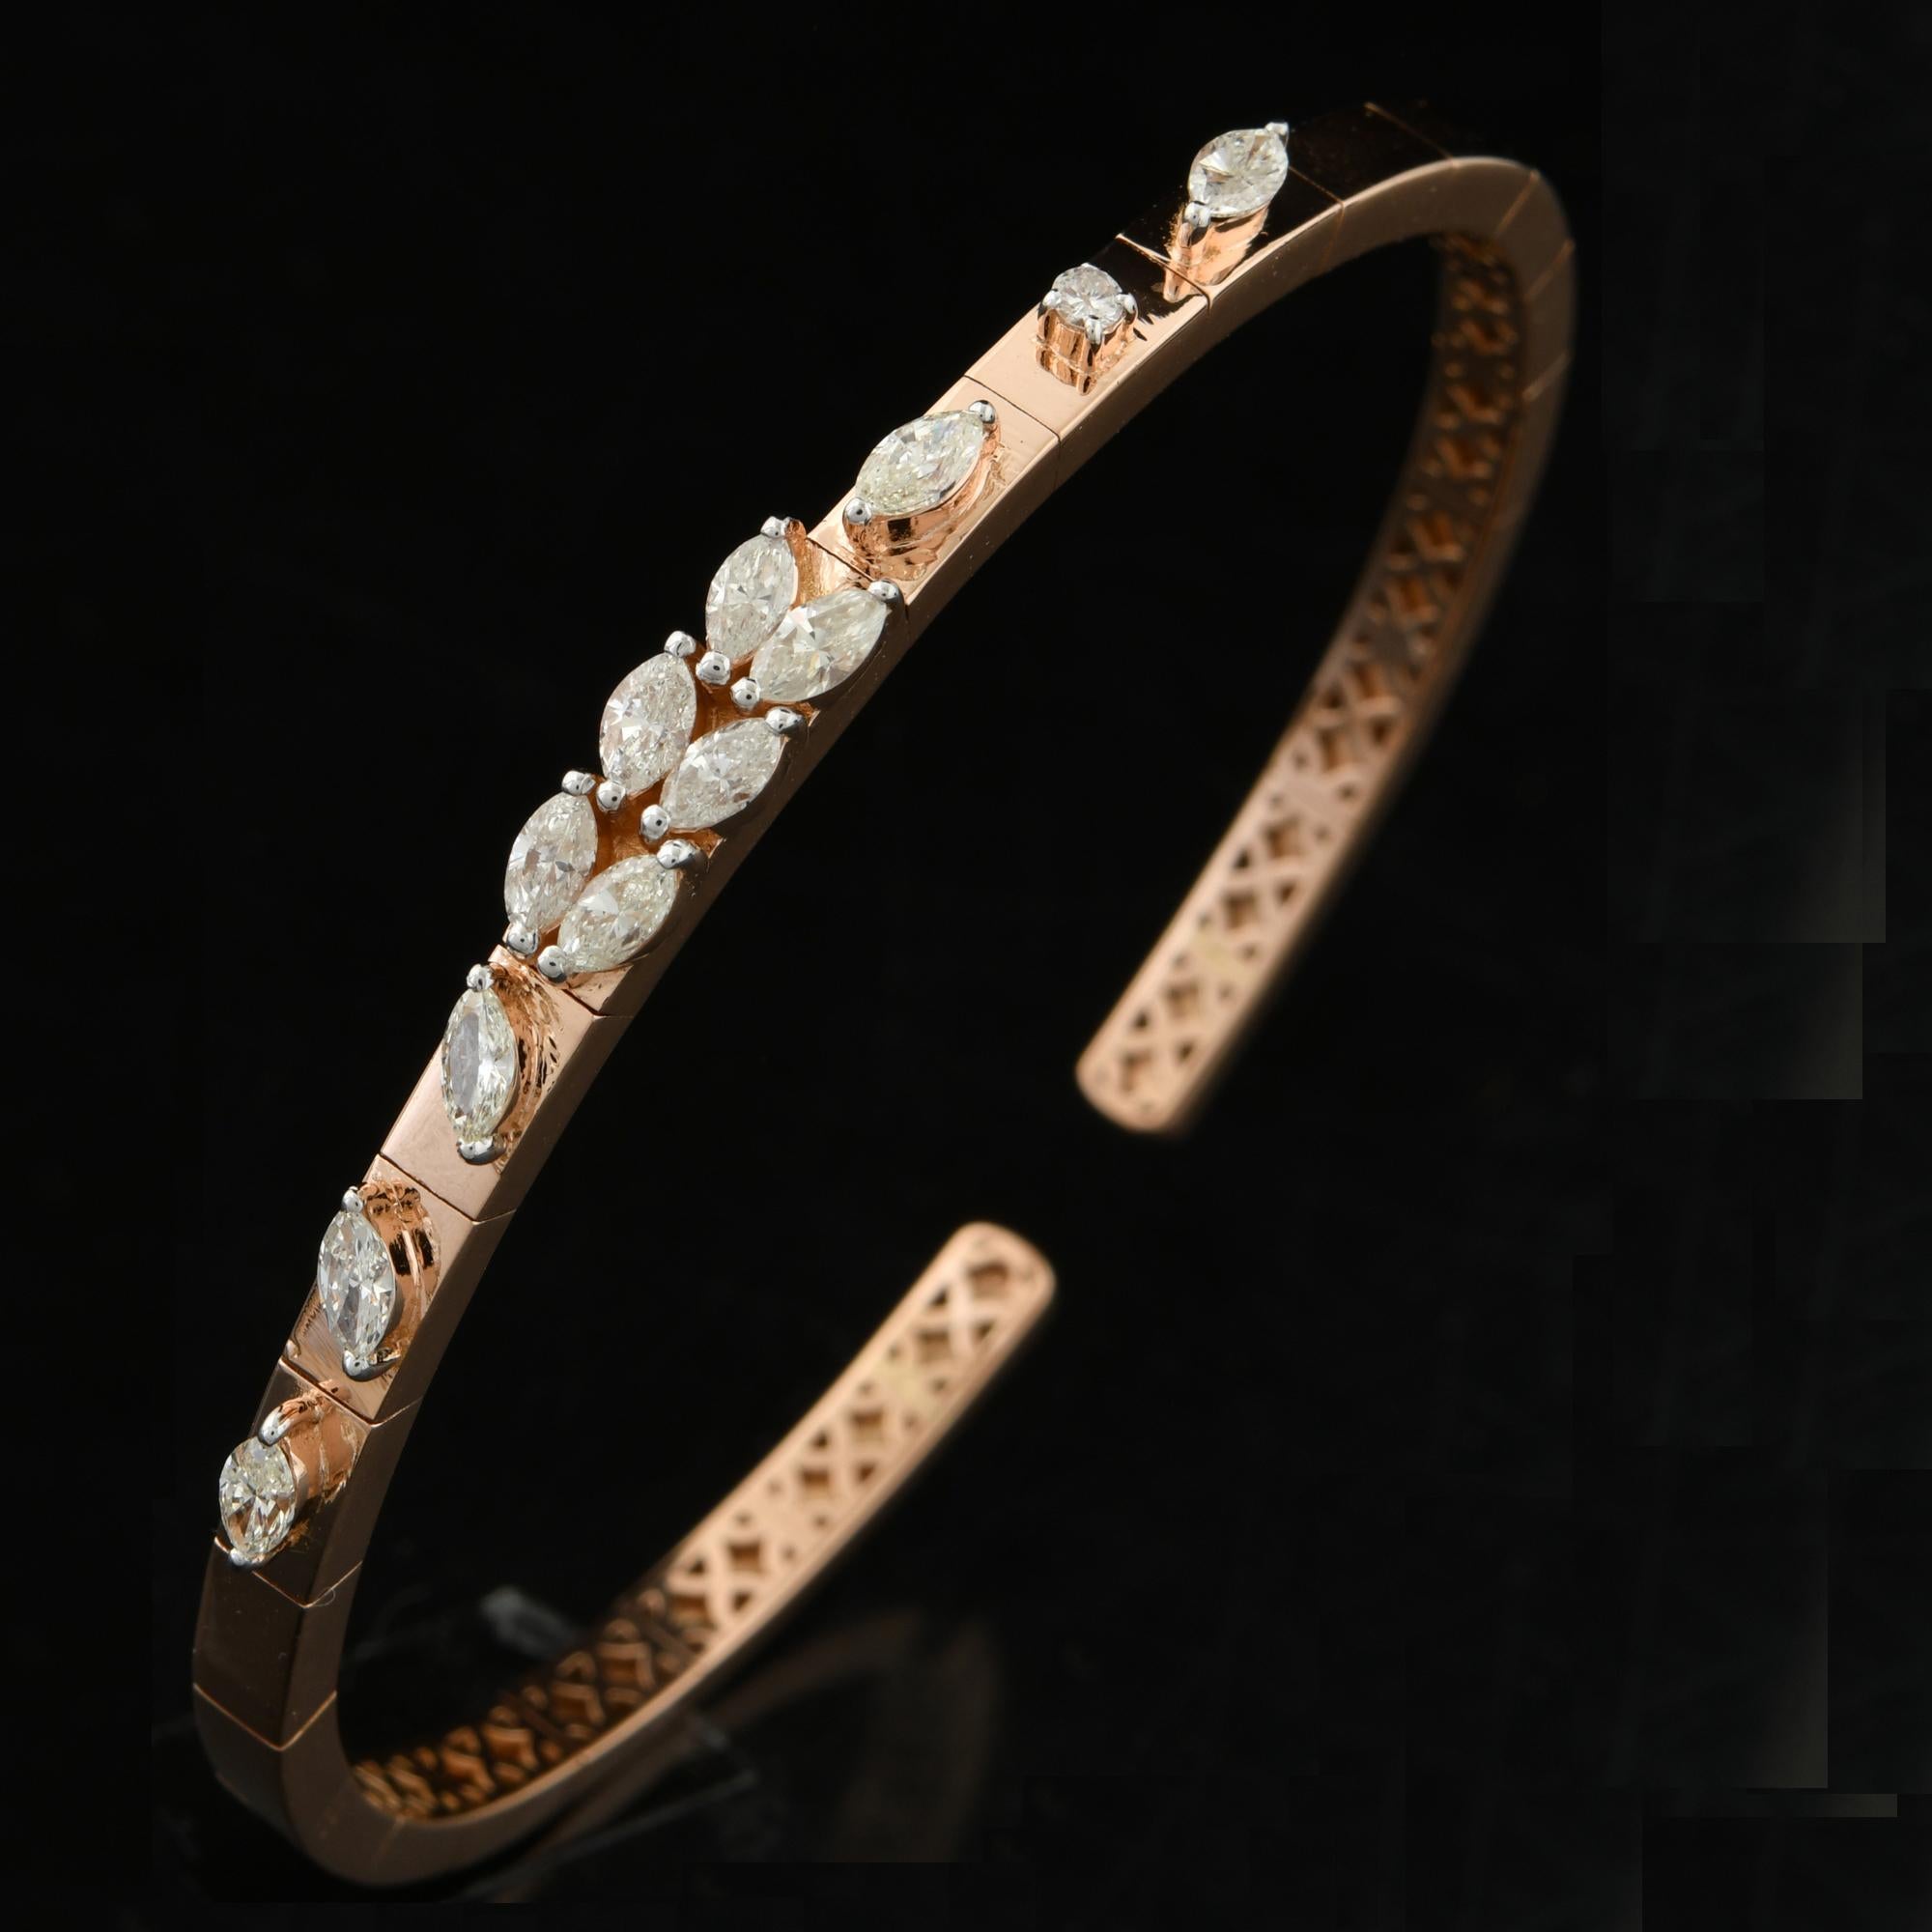 Das Armband zeichnet sich durch ein schlankes und modernes Design aus, mit einem Armreif im Stil einer Manschette, der sich anmutig um das Handgelenk legt. Der Armreif ist aus hochwertigem 18-karätigem Gelbgold gefertigt, das für seinen satten und